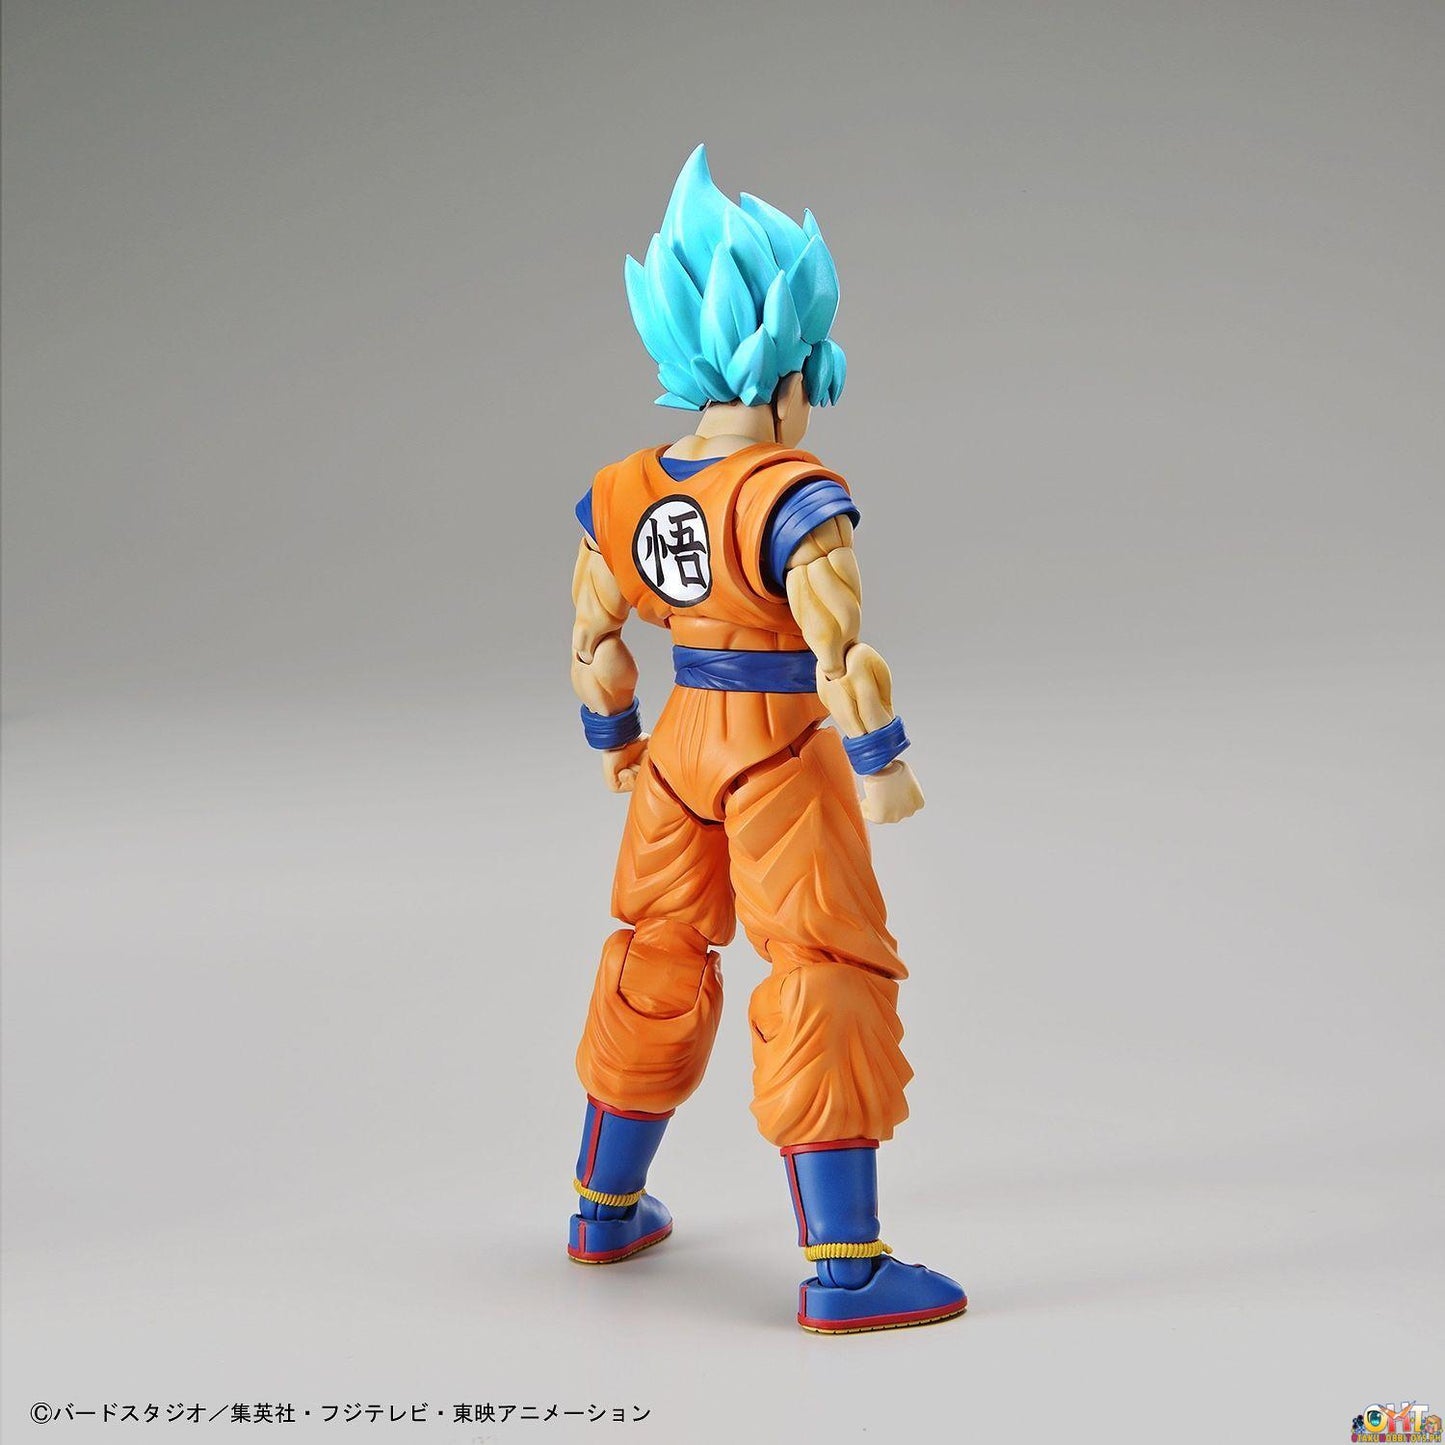 Bandai Figure-rise Standard Super Saiyan God Super Saiyan Son Goku - Dragon Ball Super